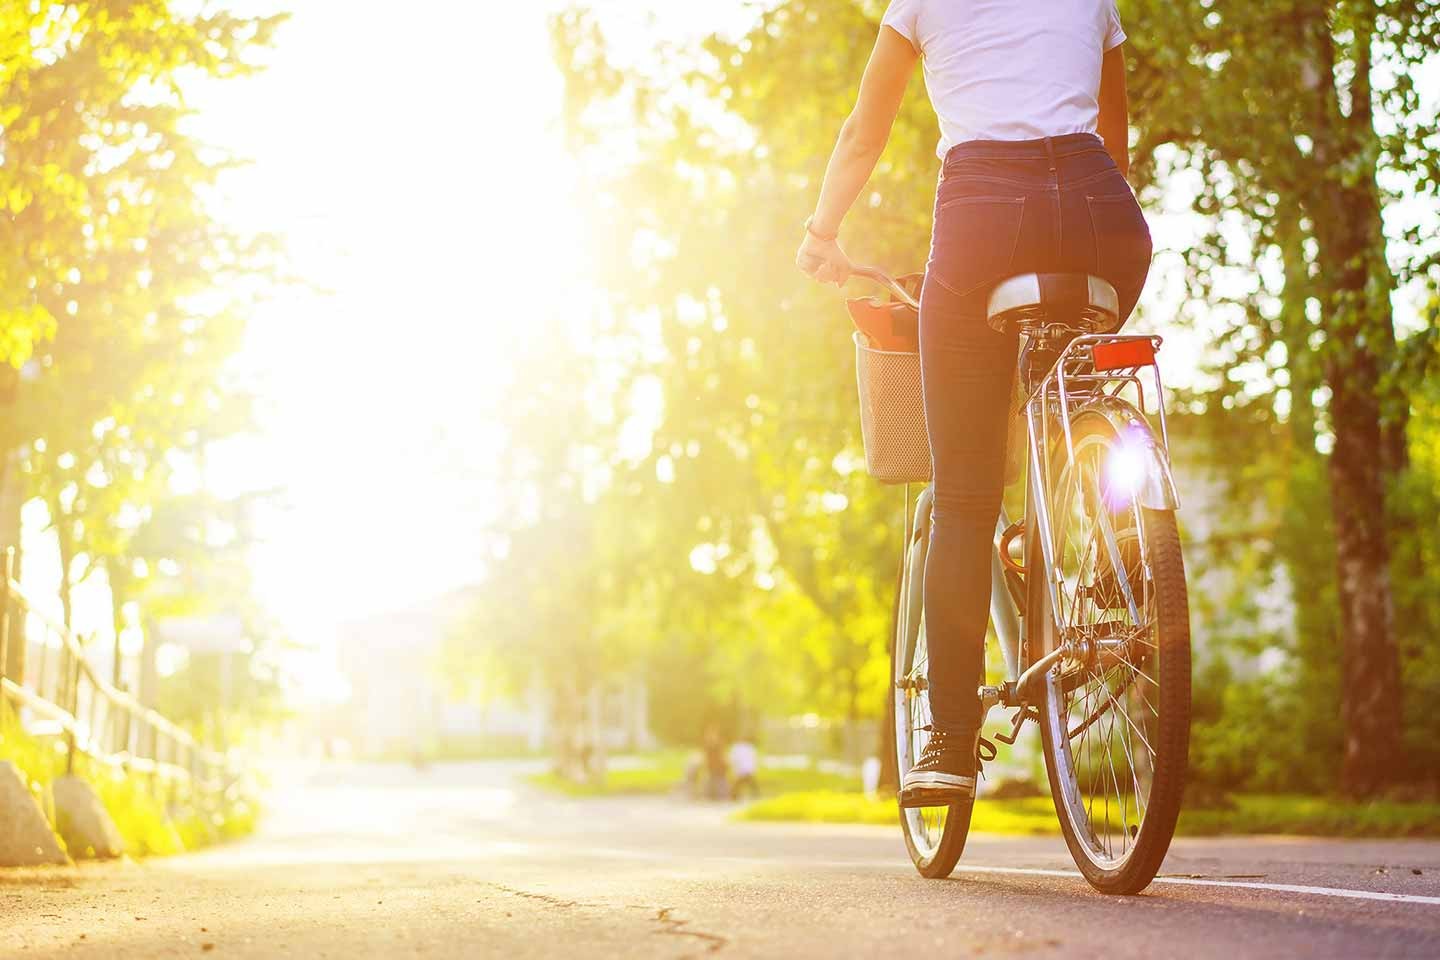 Eine Frau fährt Rad auf einer kleinen Straße. Rechts und links stehen Bäume und im Hintergrund geht die Sonne auf.